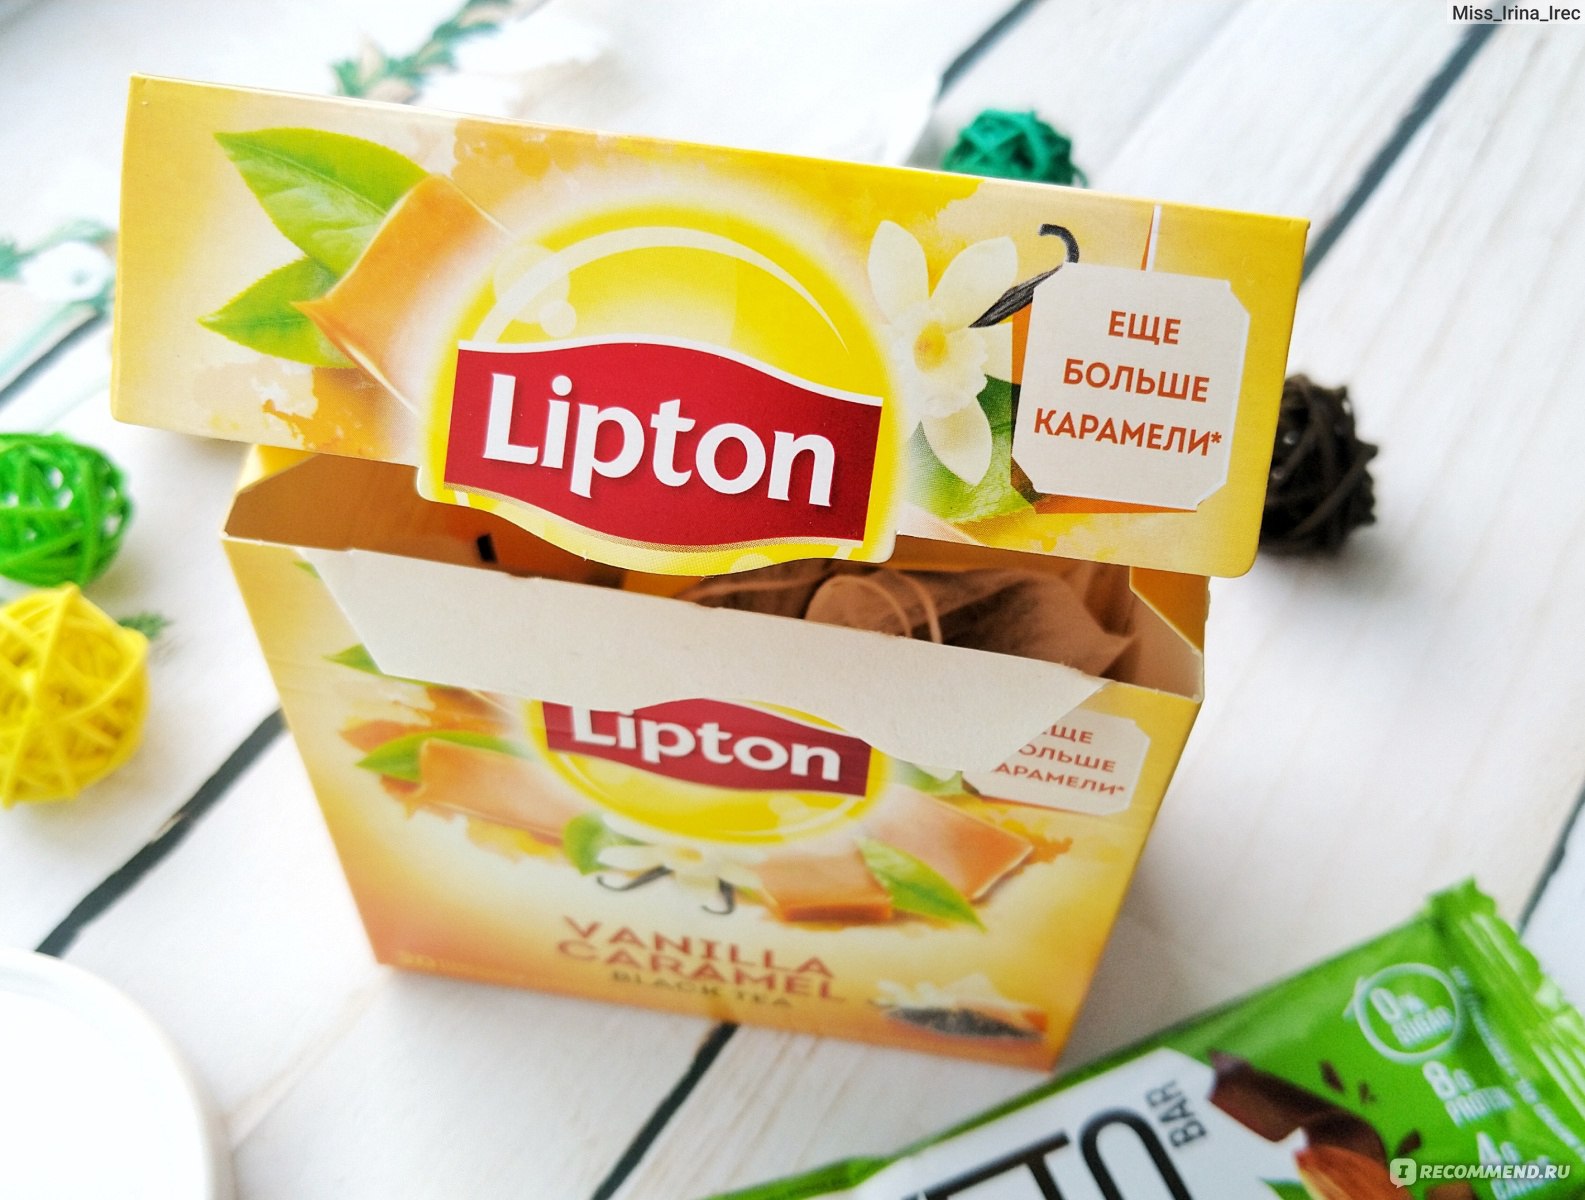 Состав чая липтон. Чай Липтон ваниль карамель. Реклама чая Липтон. Вещи с логотипом ЛИПТОНА. Чай с ванилью и карамелью.